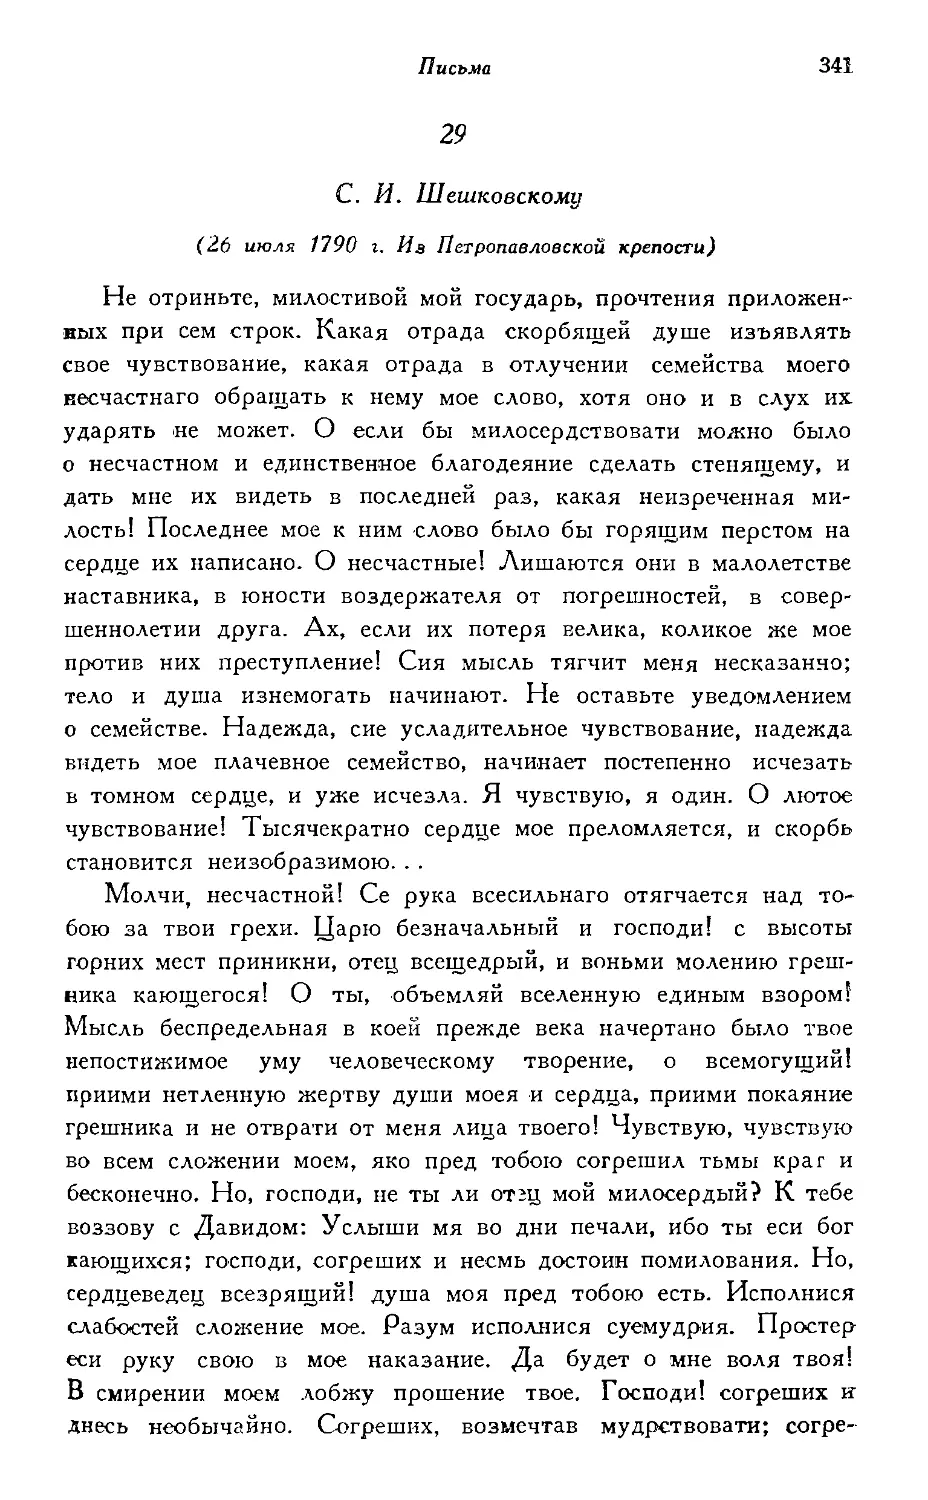 29—31. С. И. Шешковскому (1790 г.)